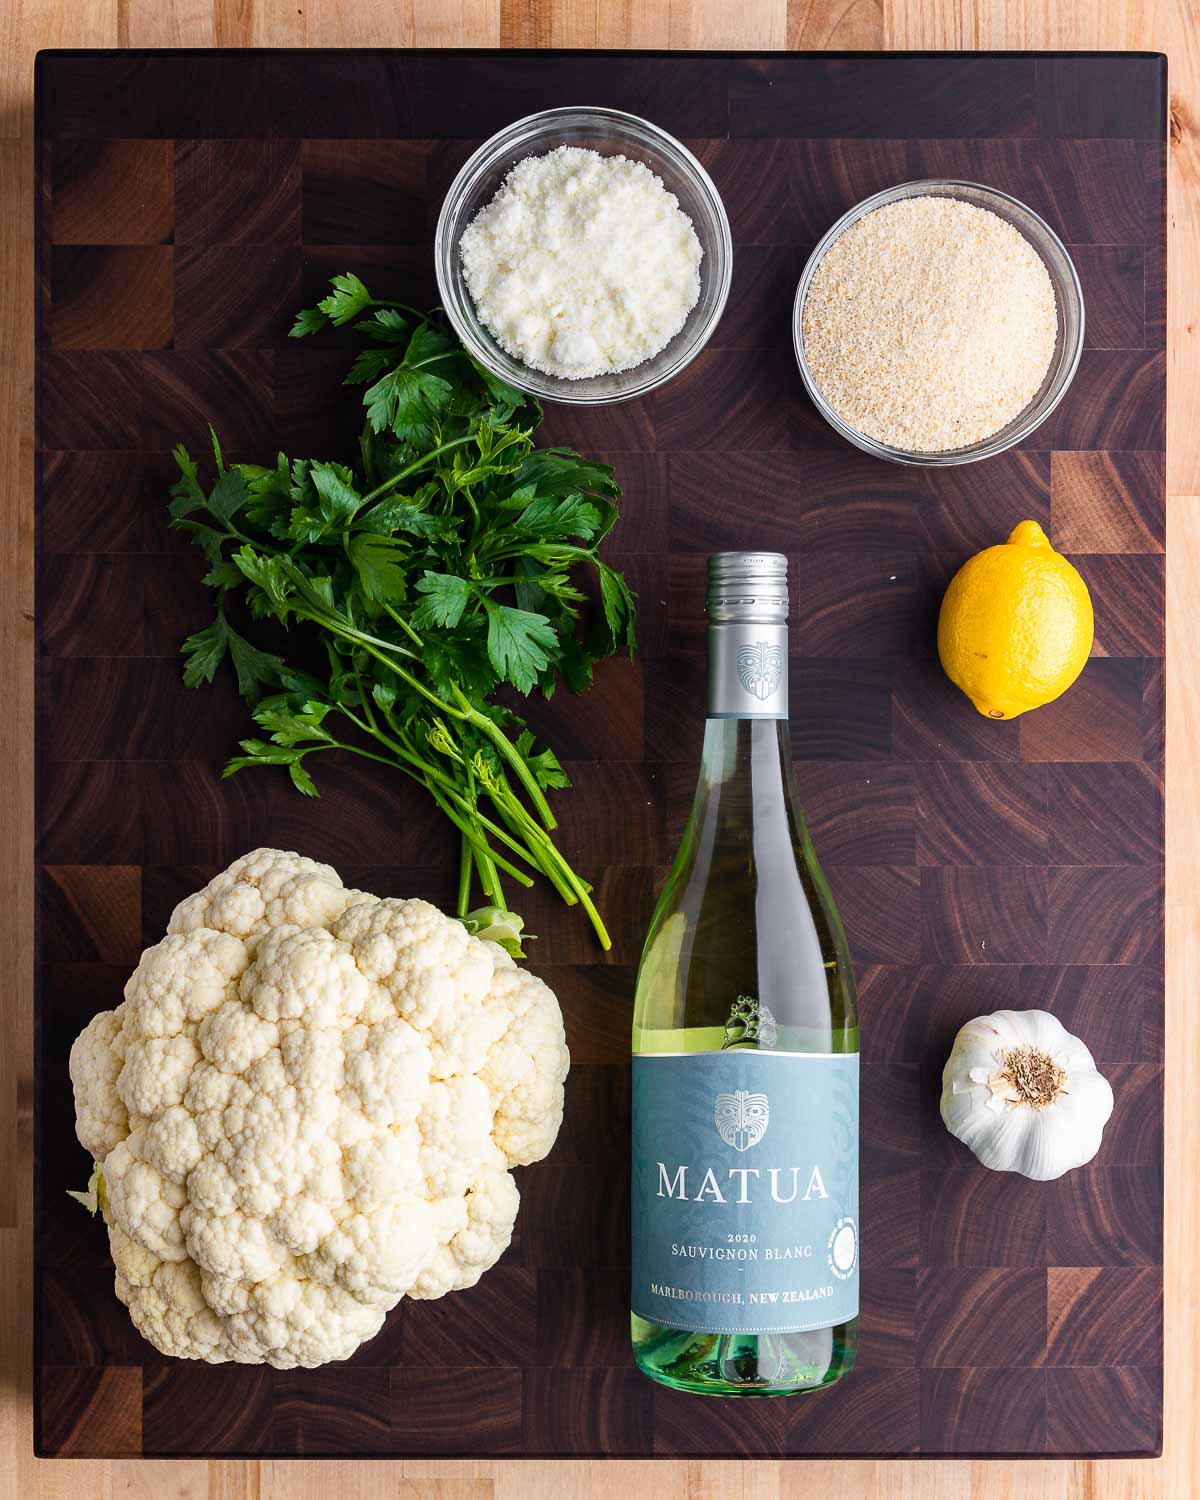 Ingredients shown: Pecorino, breadcrumbs, parsley, cauliflower, white wine, lemon, and garlic.